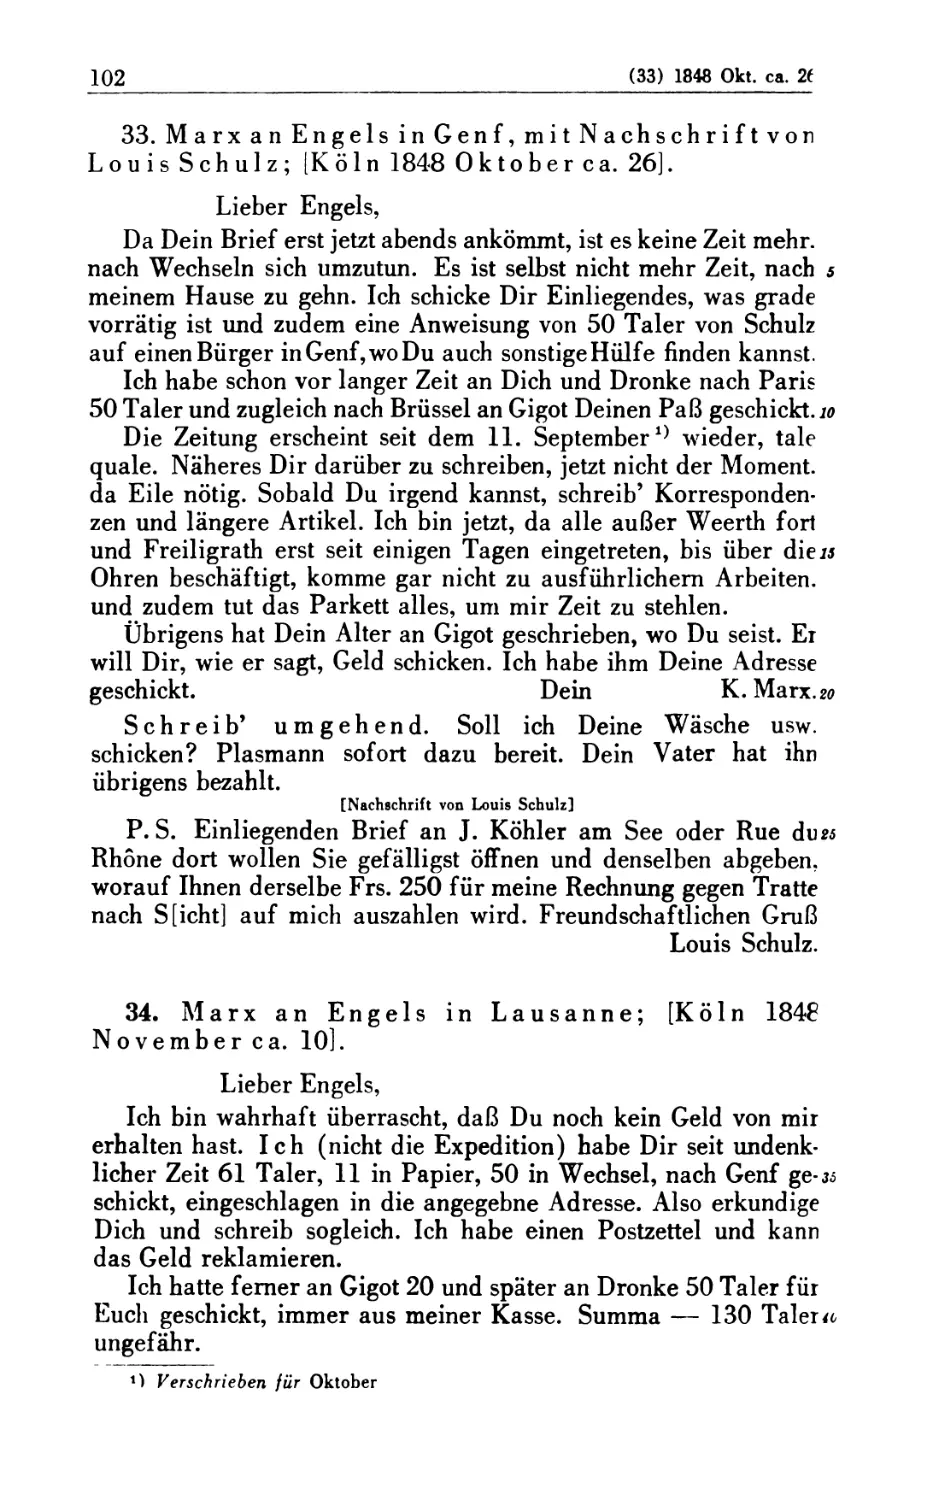 33. Marx an Engels in Genf, mit Nachschrift von Louis Schulz; [Köln 1848 Oktober ca. 26]
34. Marx an Engels in Lausanne; [Köln 1848 November ca. 10]